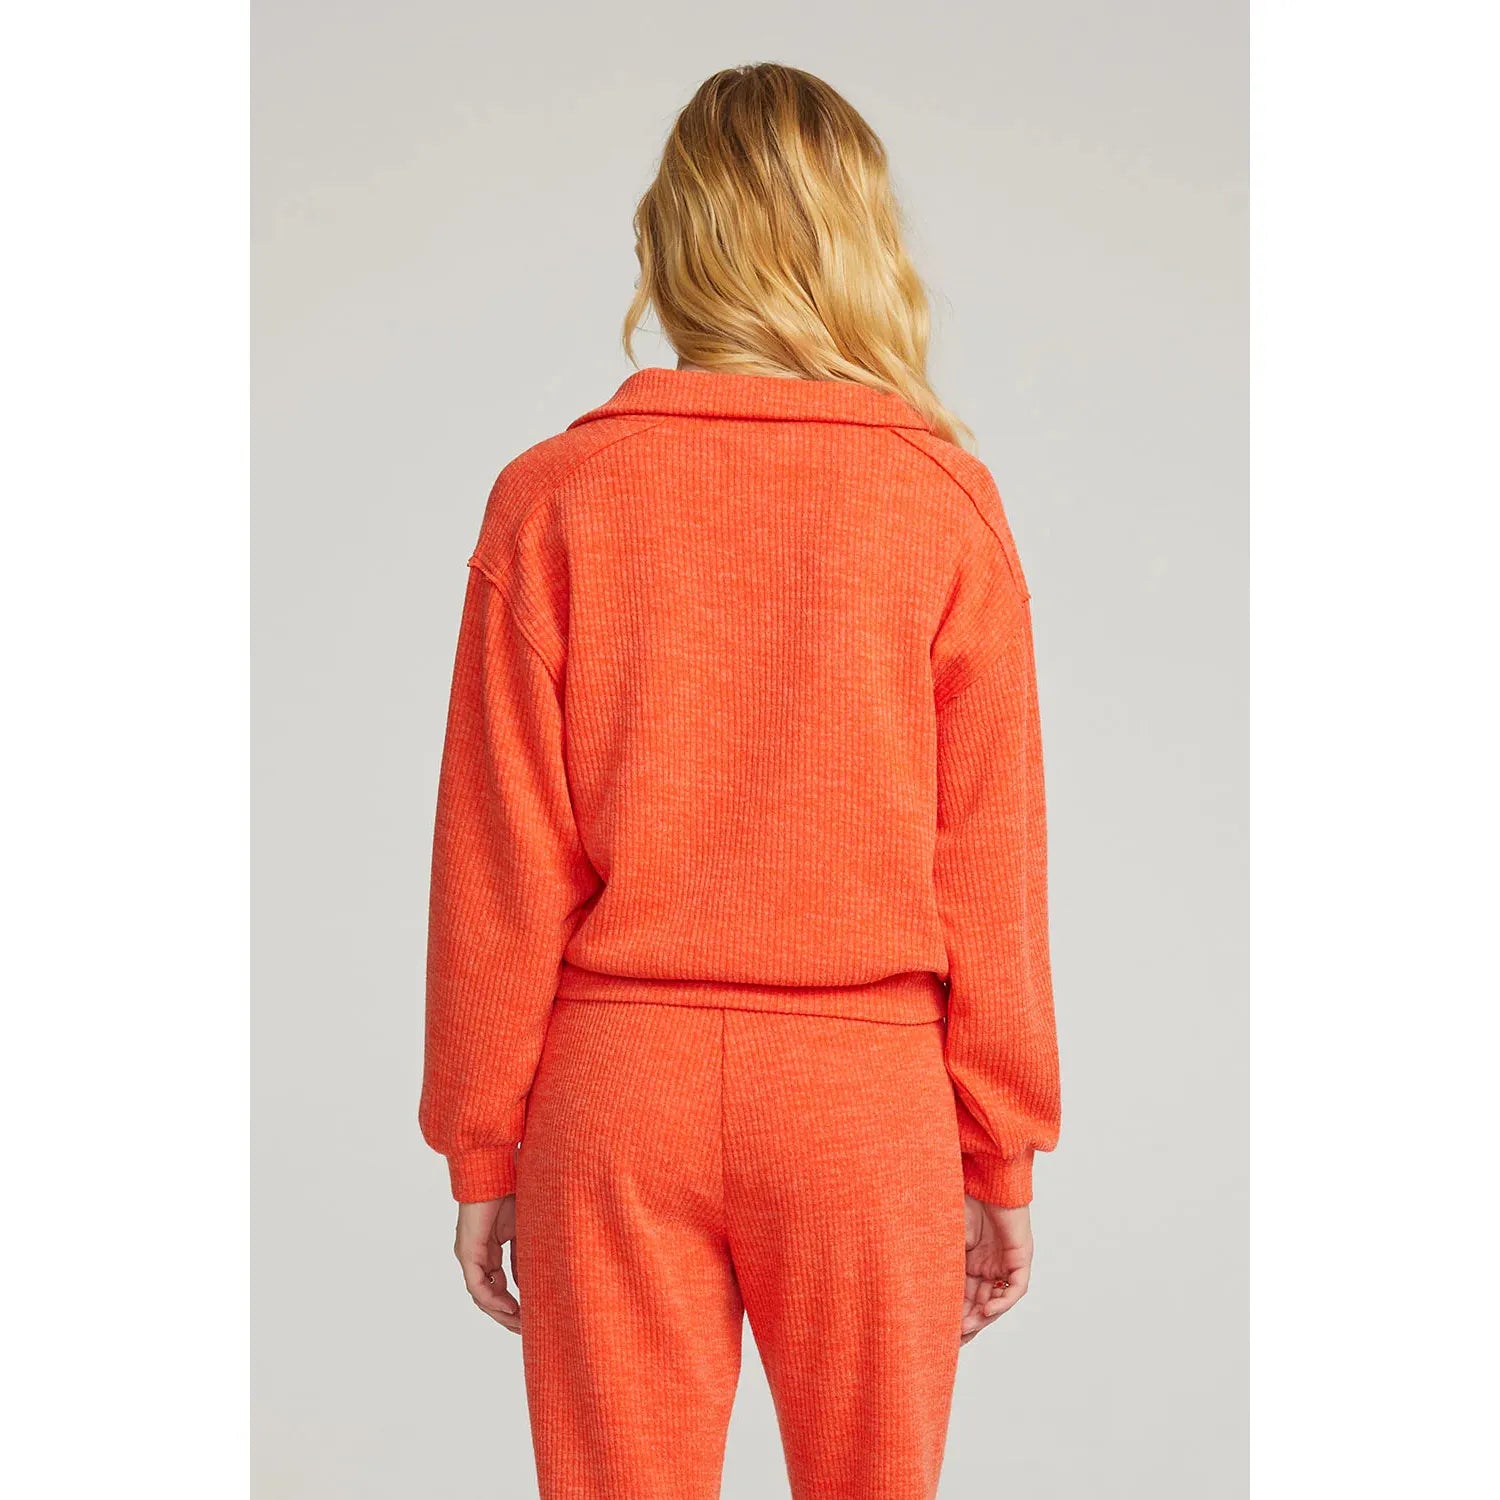 Saltwater Luxe - Half Zip Pullover in Hot Orange